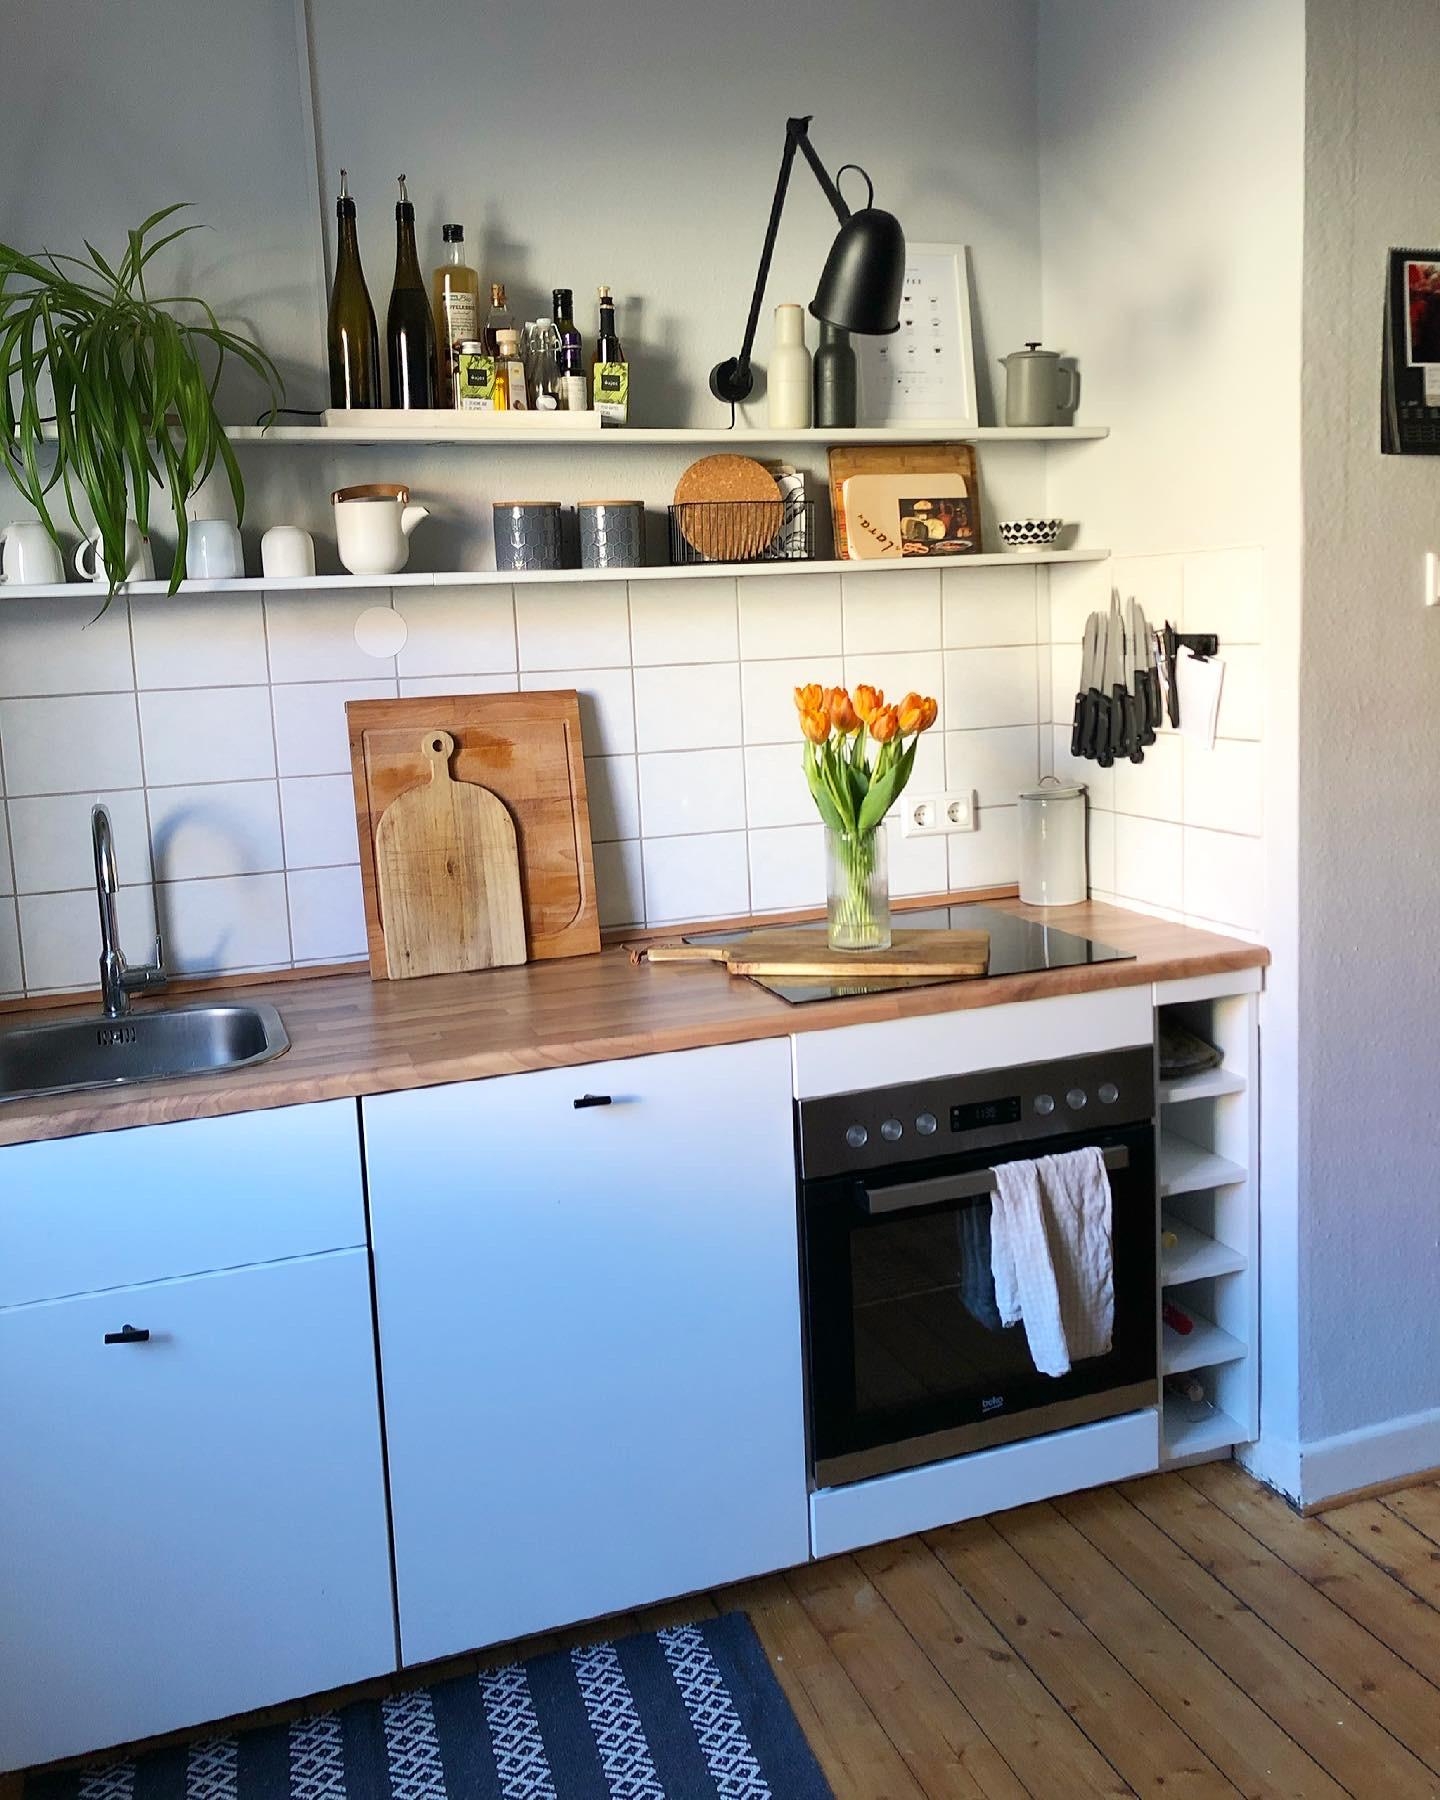 Küchenliebe! 
#küche #küchenideen #kleineküche #hyggehome #kücheninspiration #ikeaküche #blumen